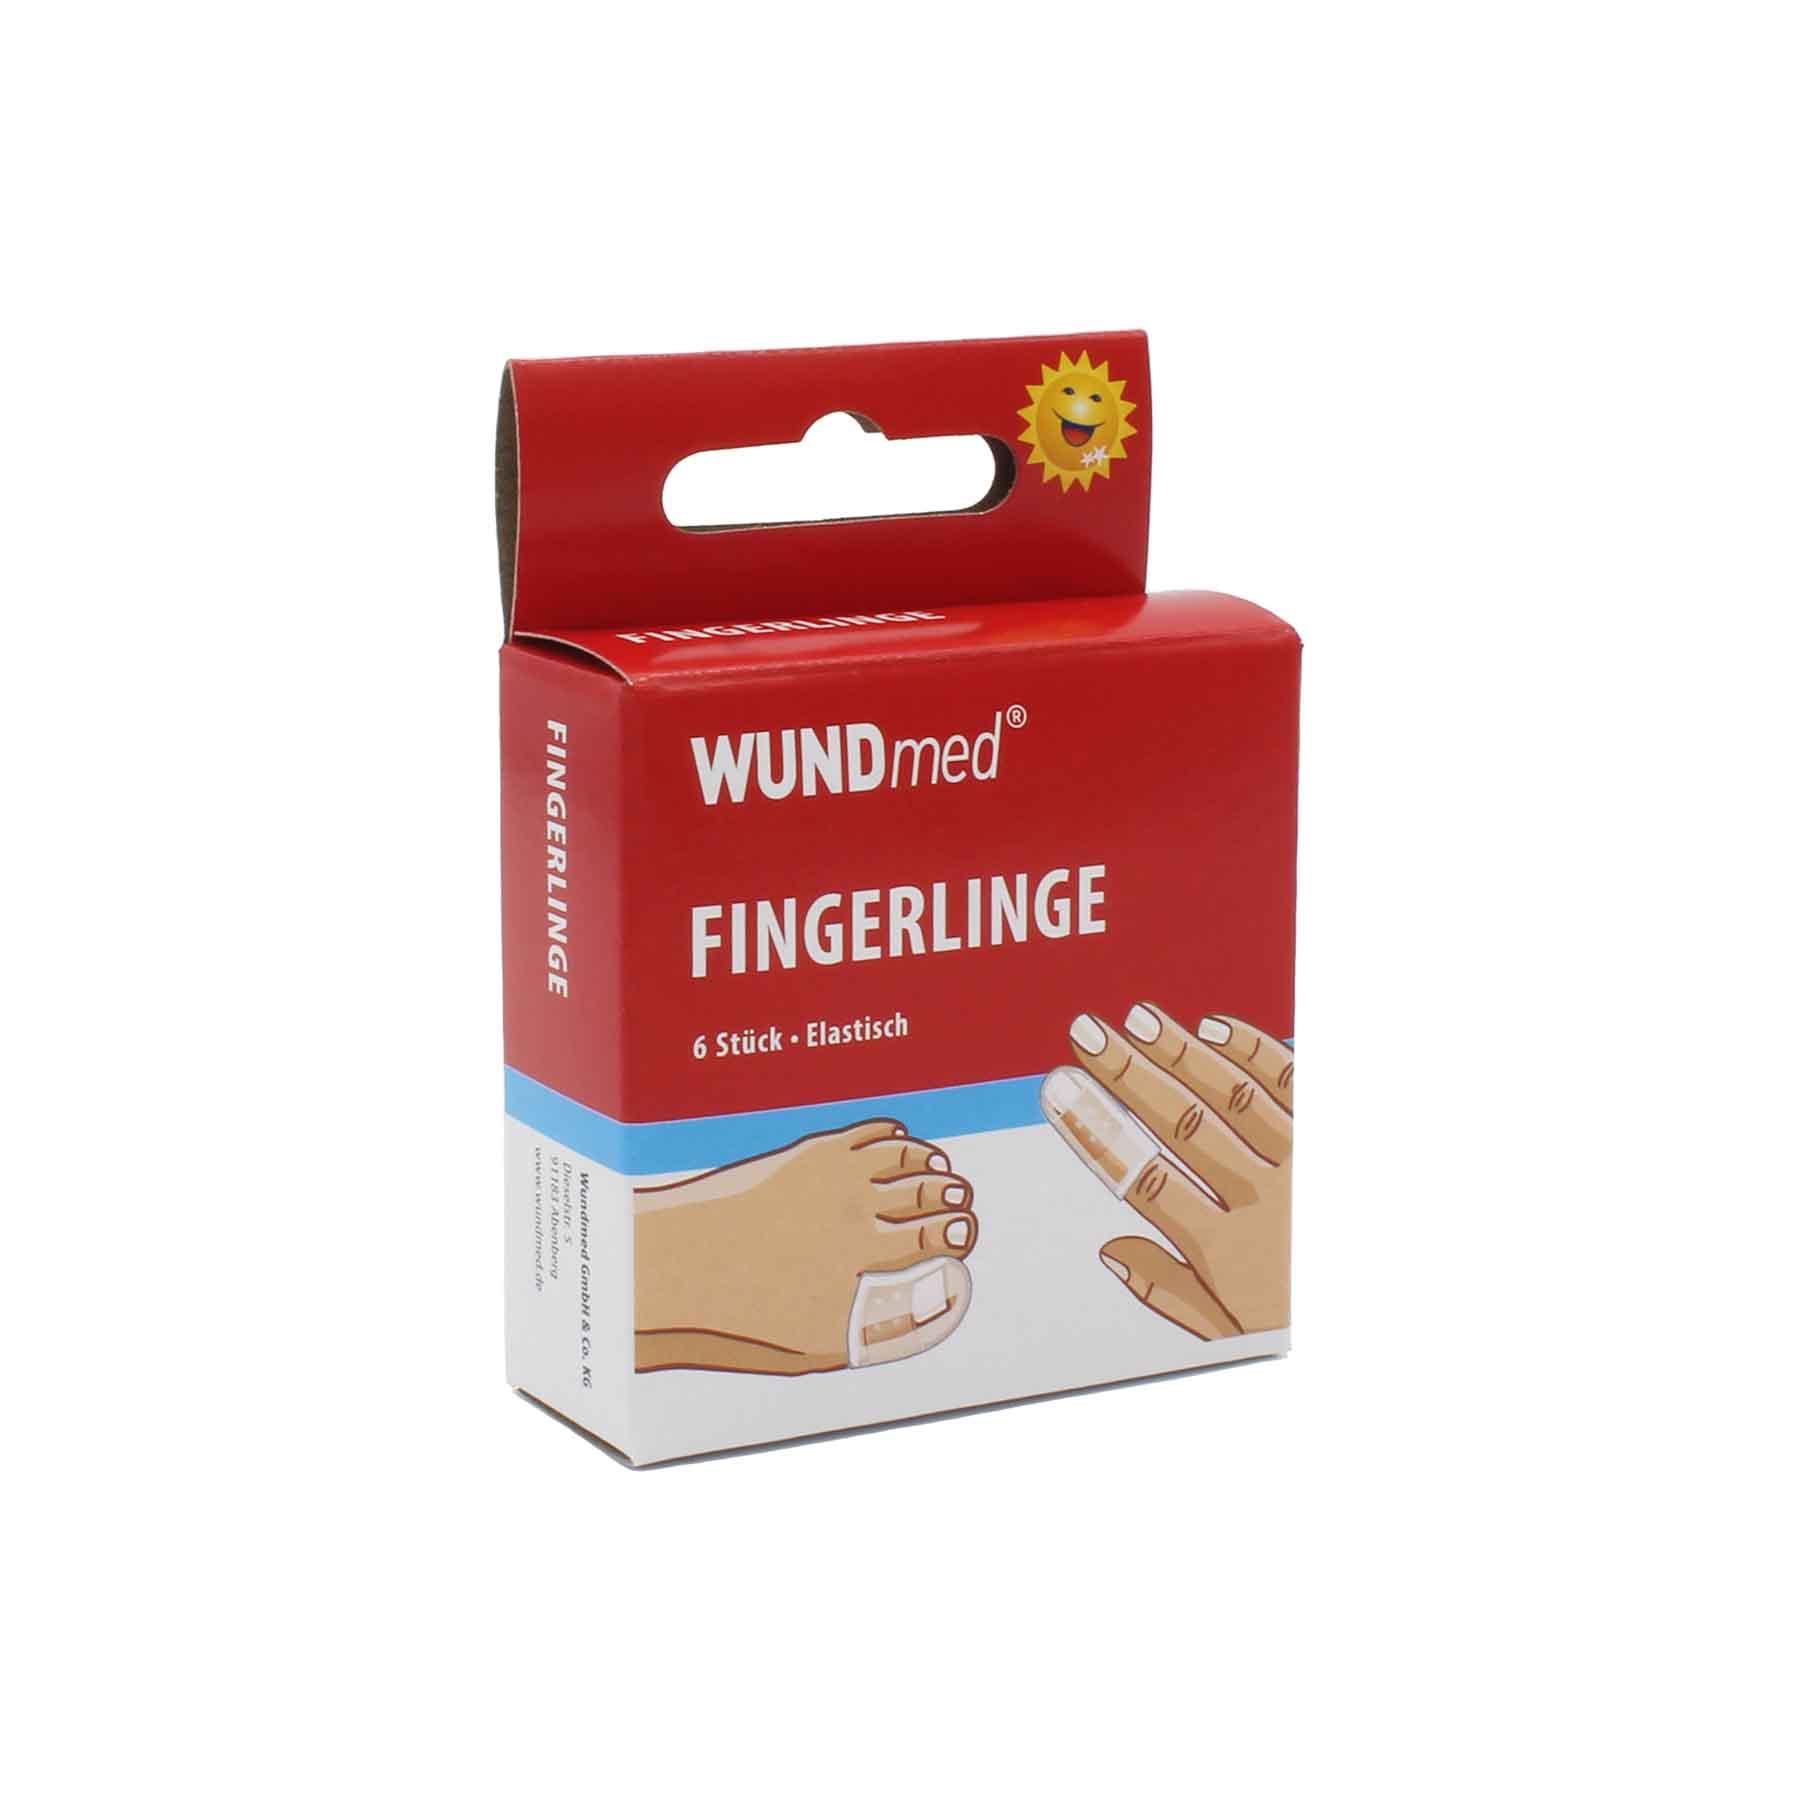 WUNDmed® Fingerlinge 6 Stück